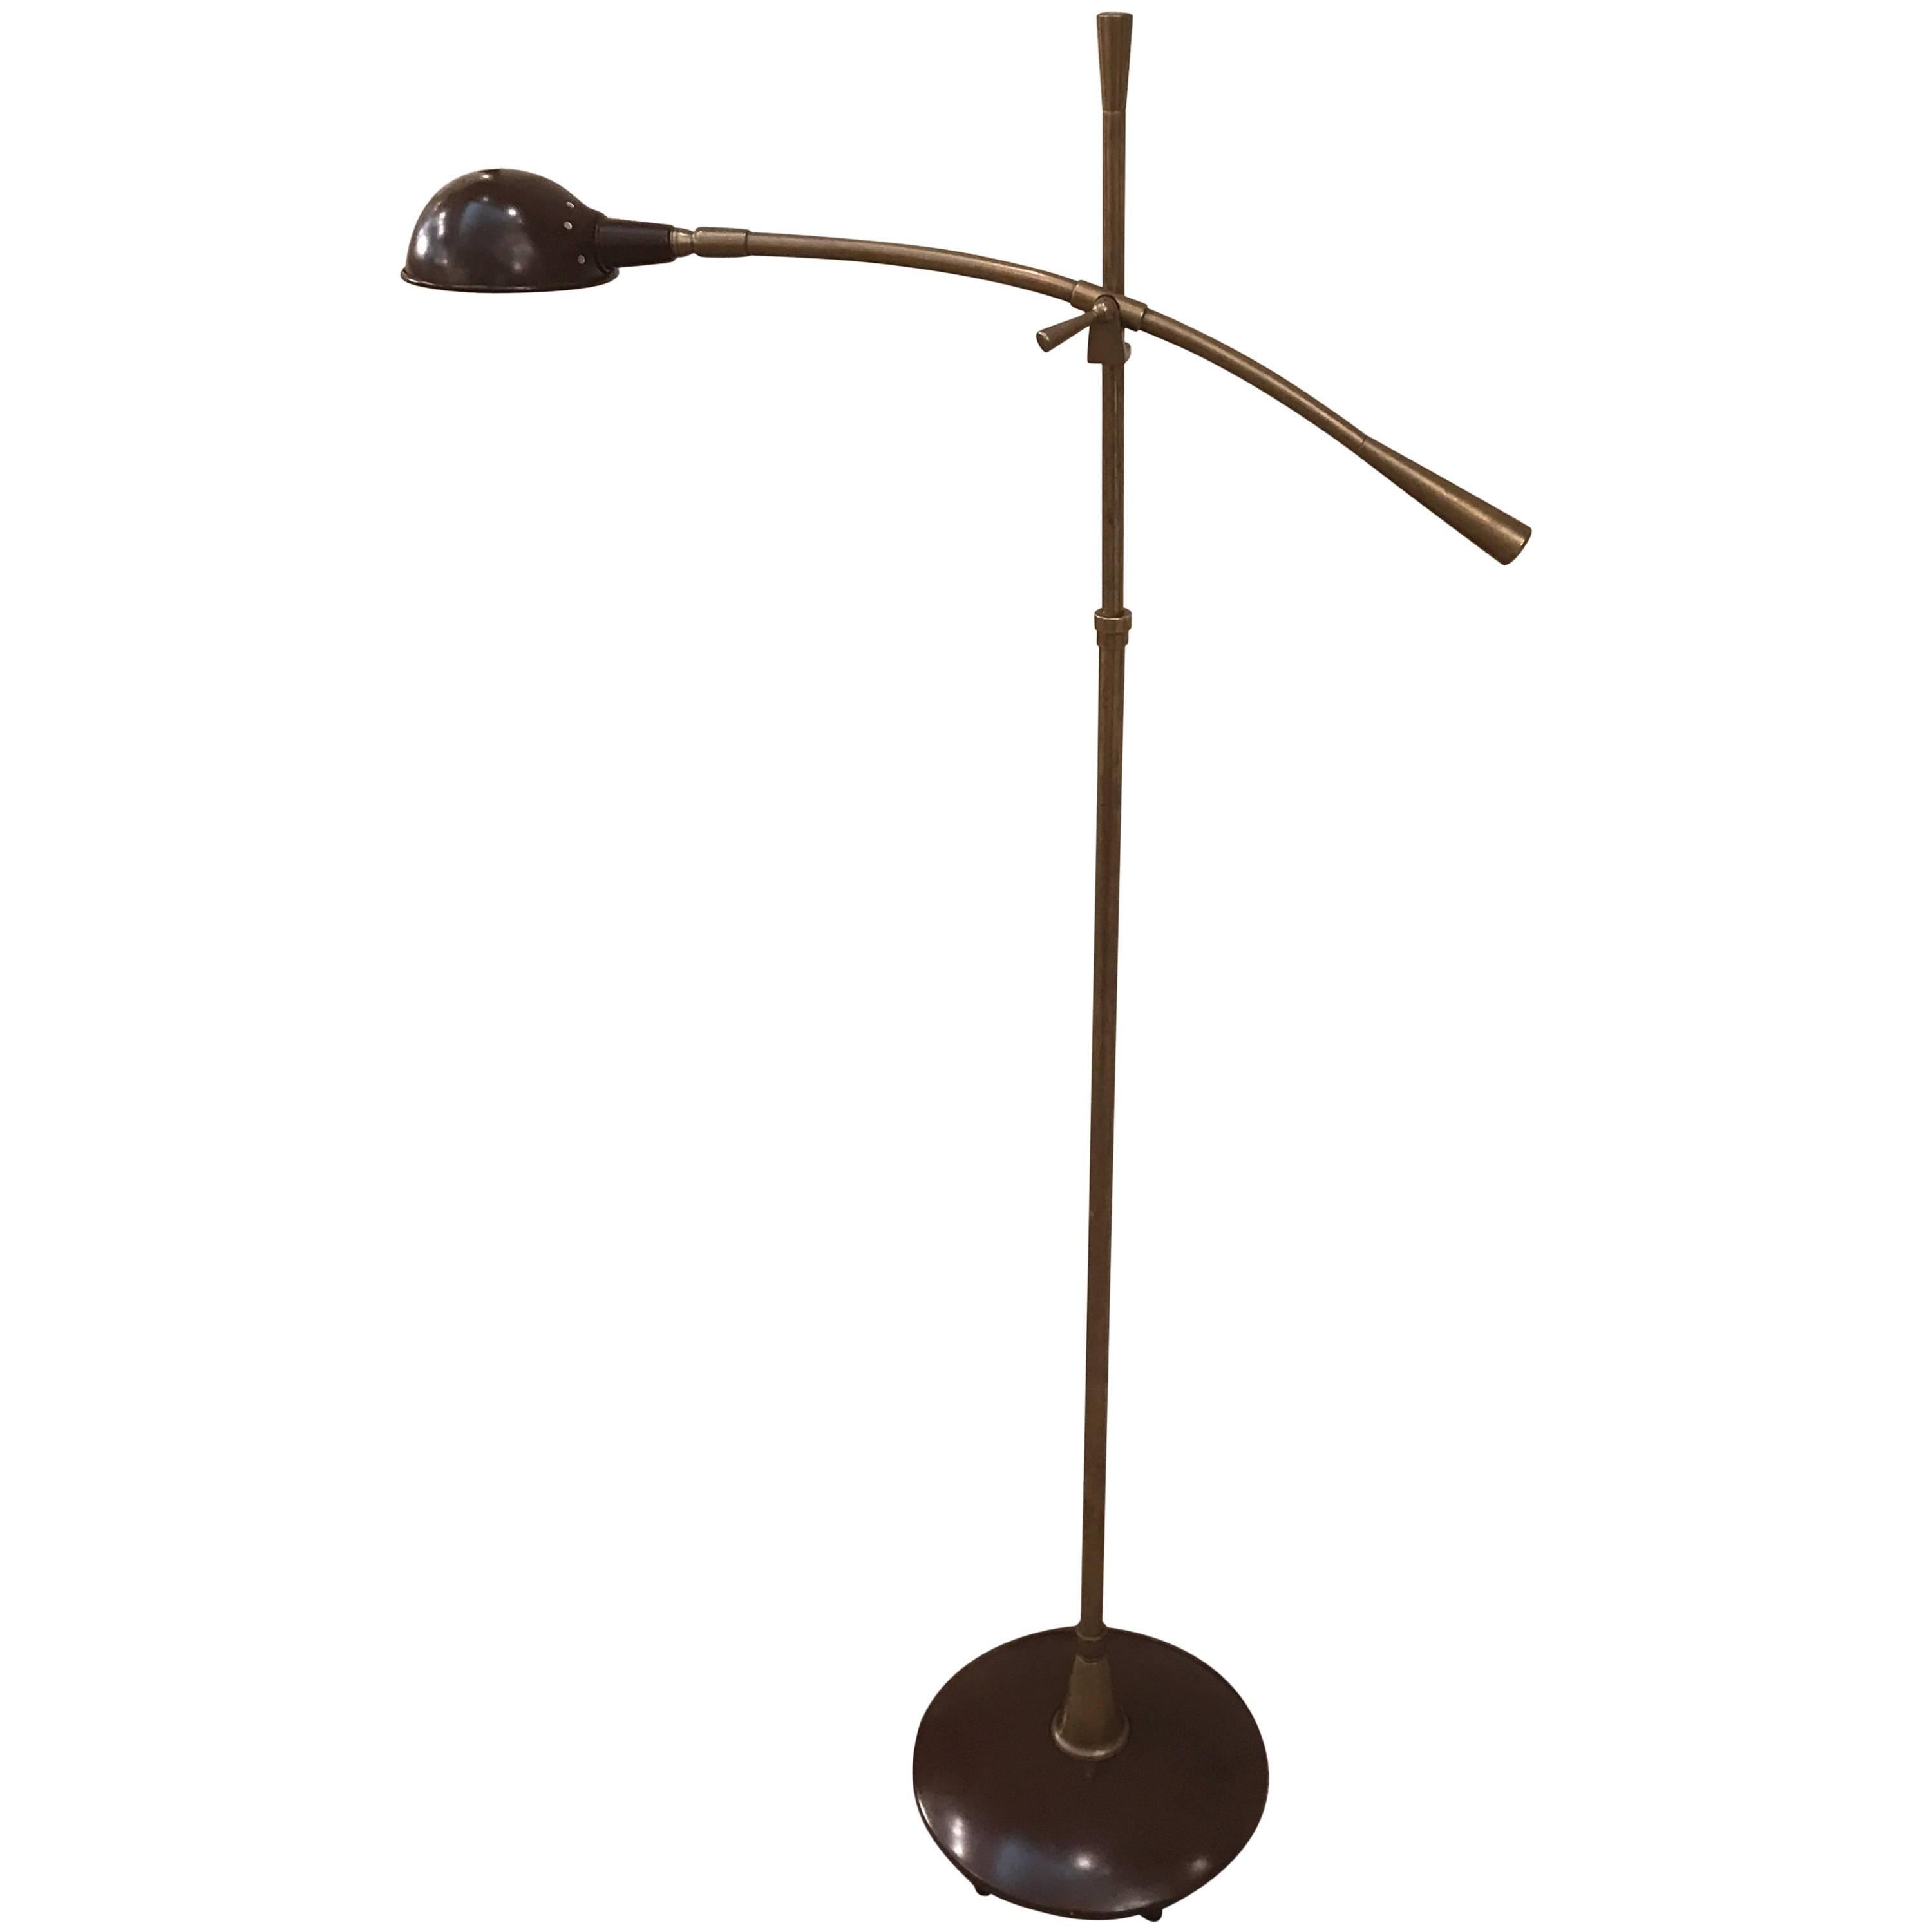 Italian Mid-Century Counter Balance Floor Lamp